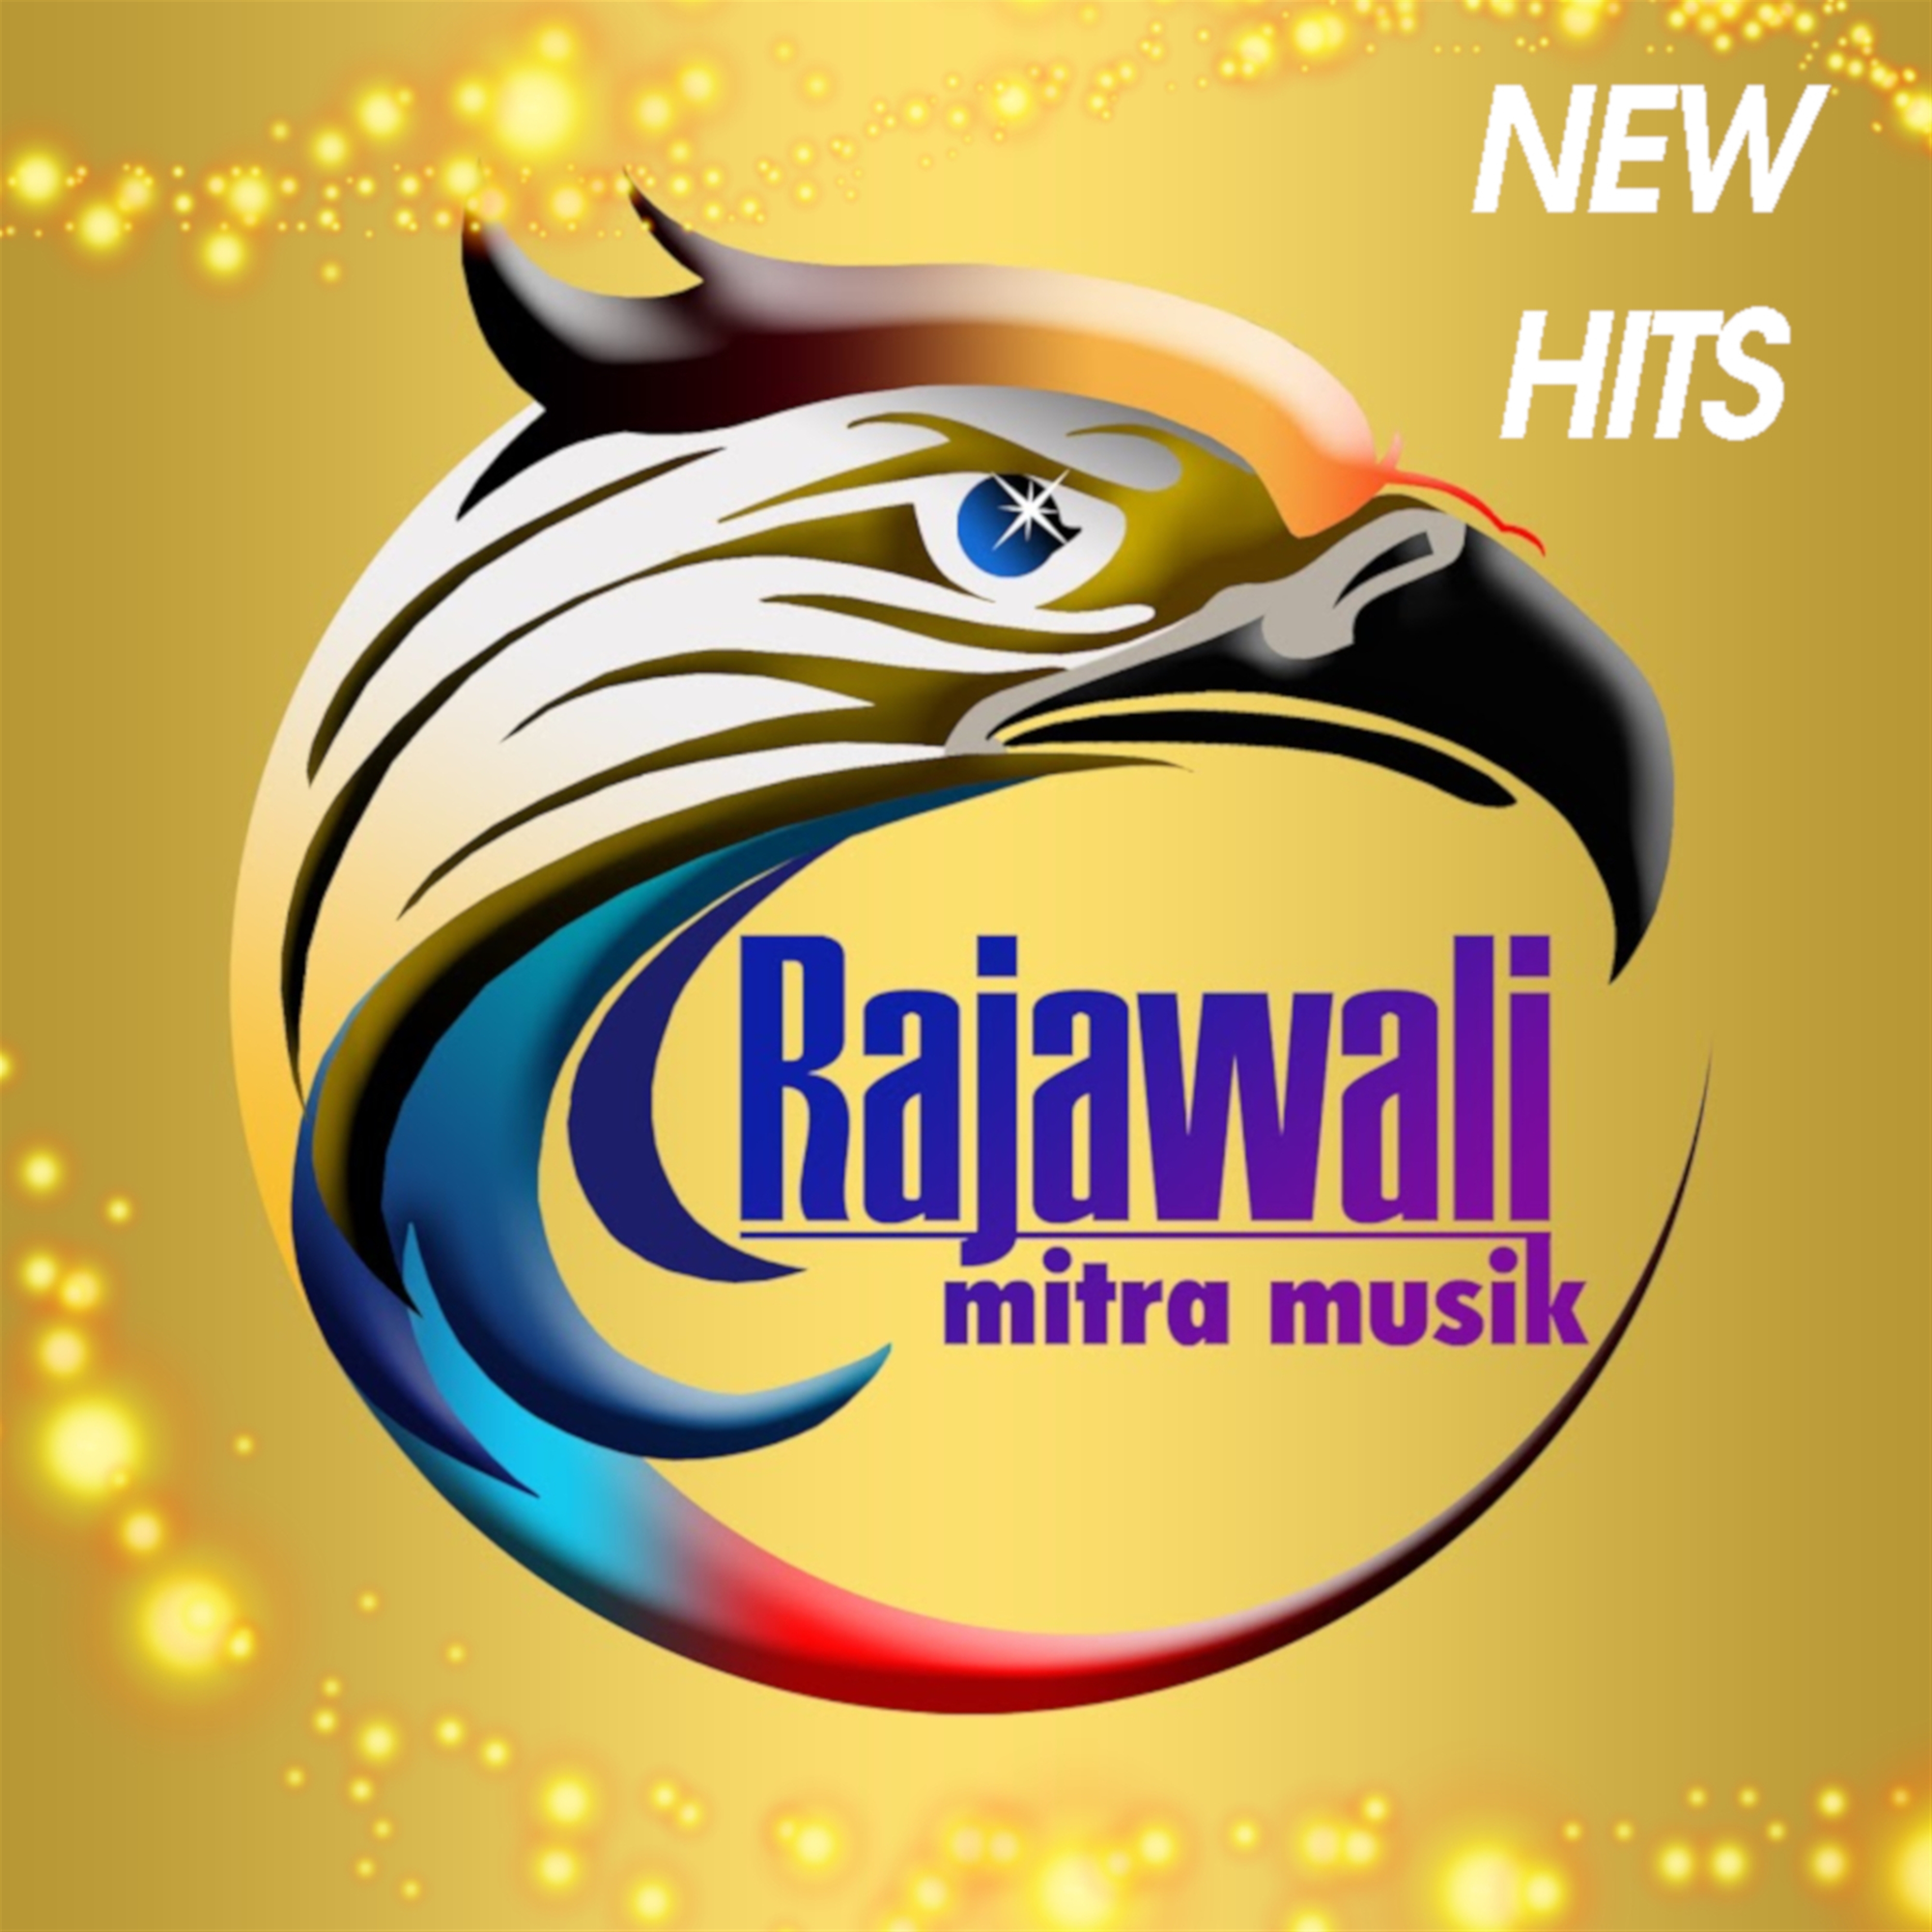 Rajawali Mitra Musik New Hits